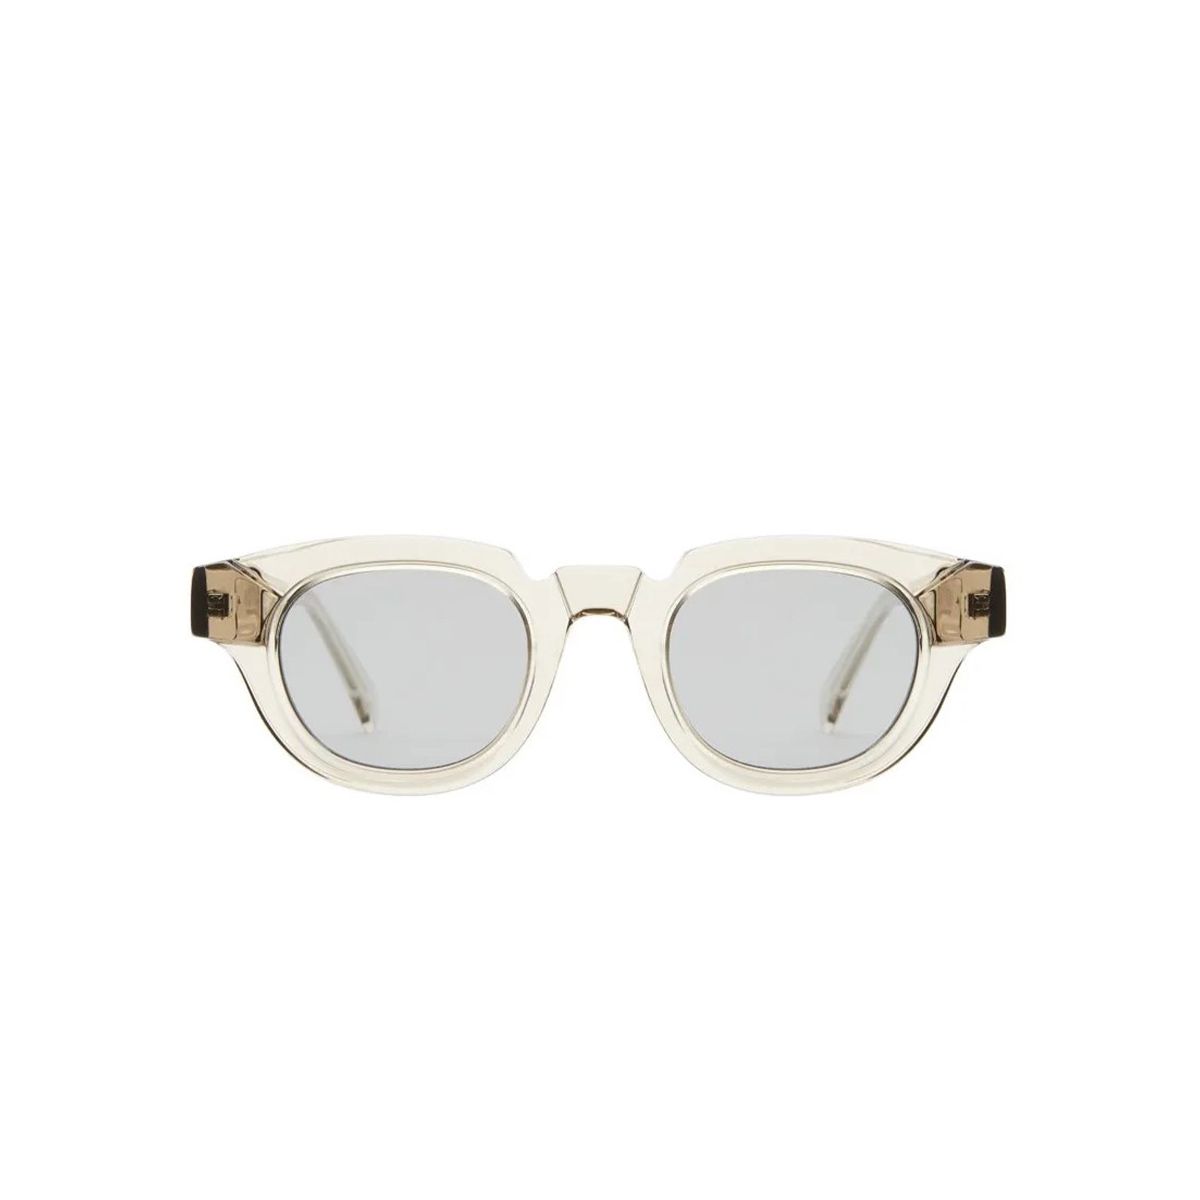 Smoke + Transparent Grey Sunglasses